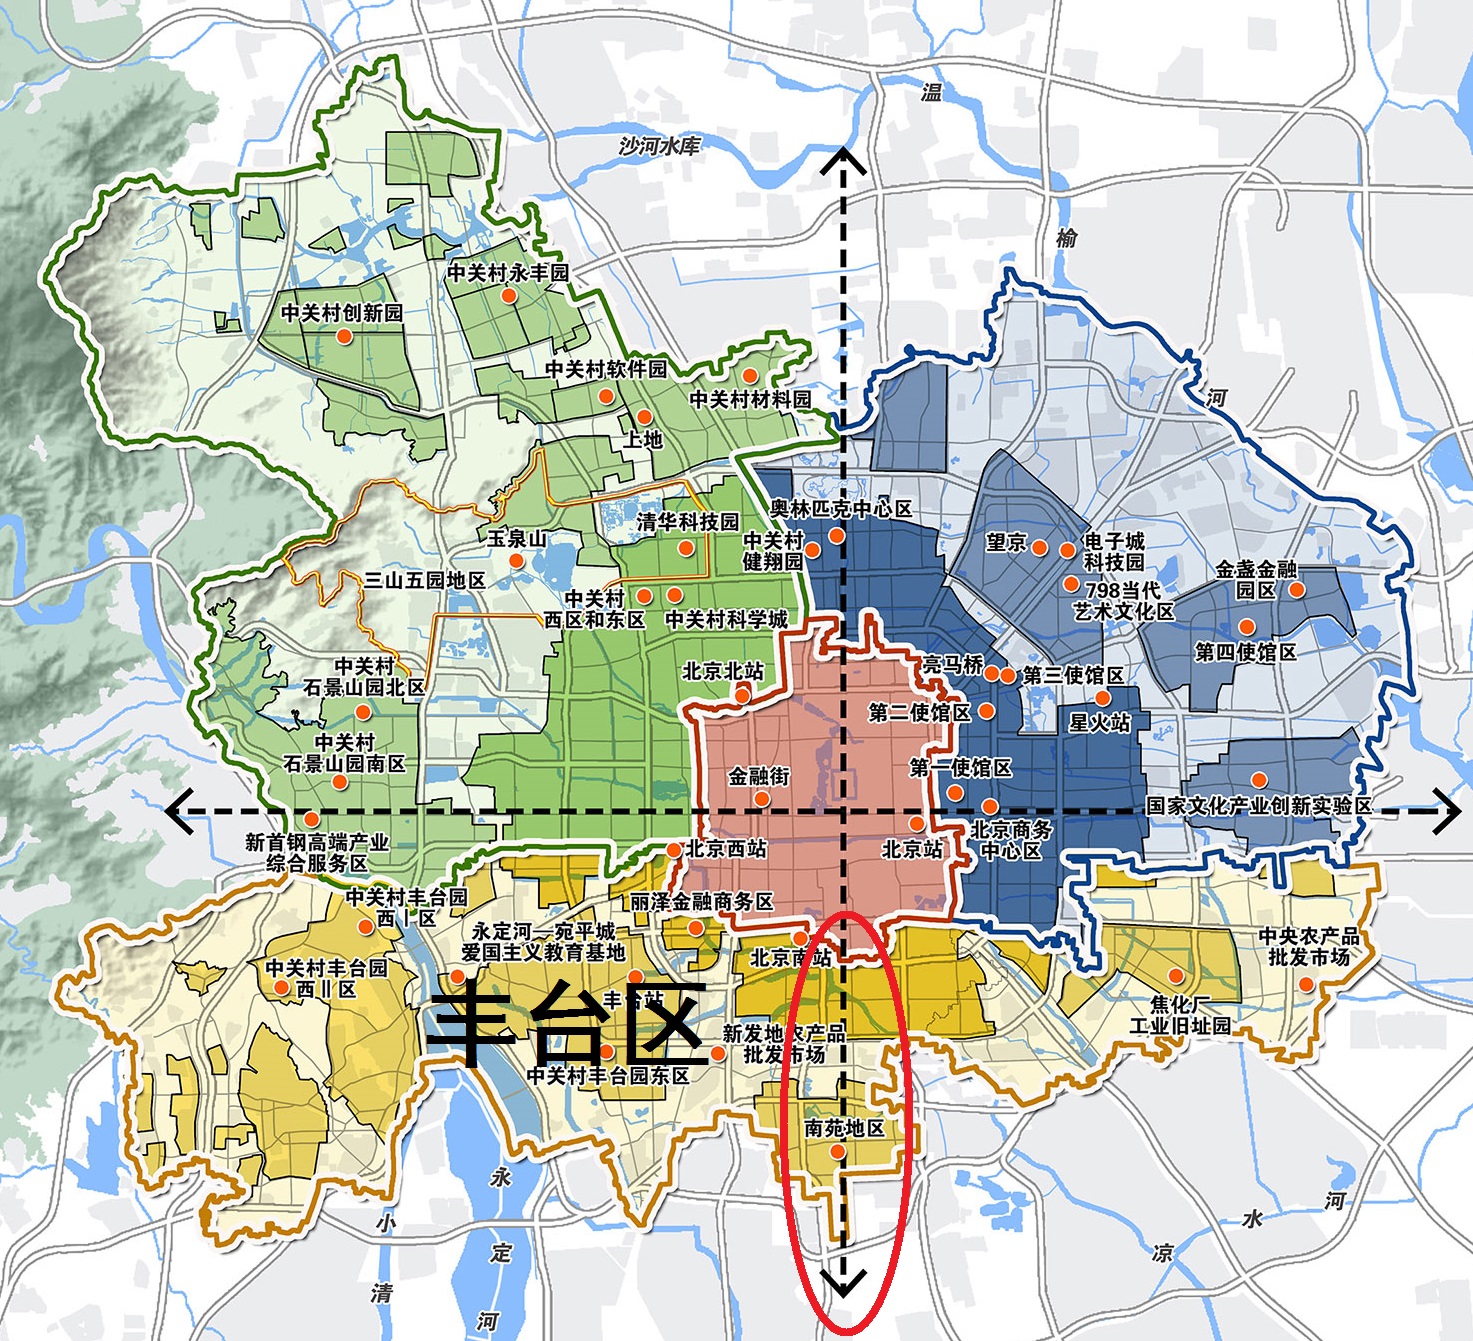 丰台区的常住人口要控制在195.5万,完成北京疏解人口的任务